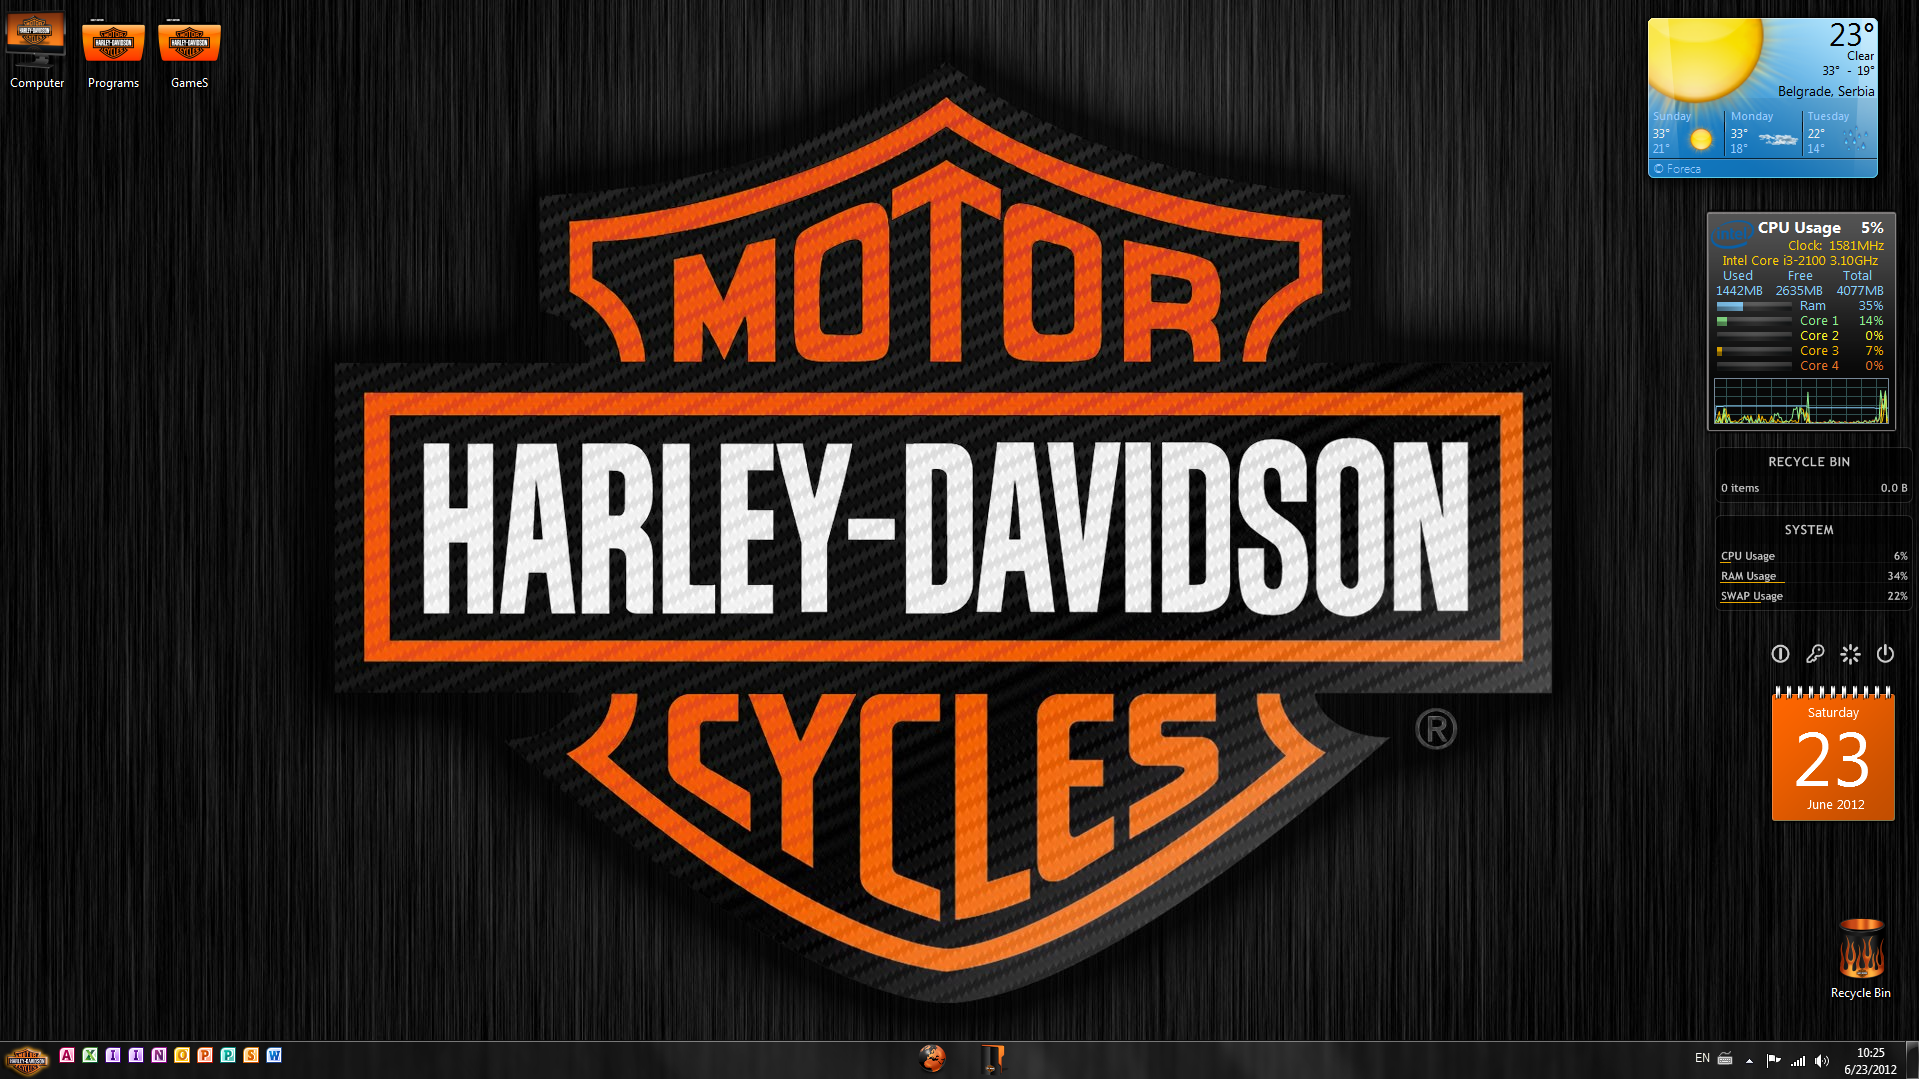 Harley Davidson desktop v2